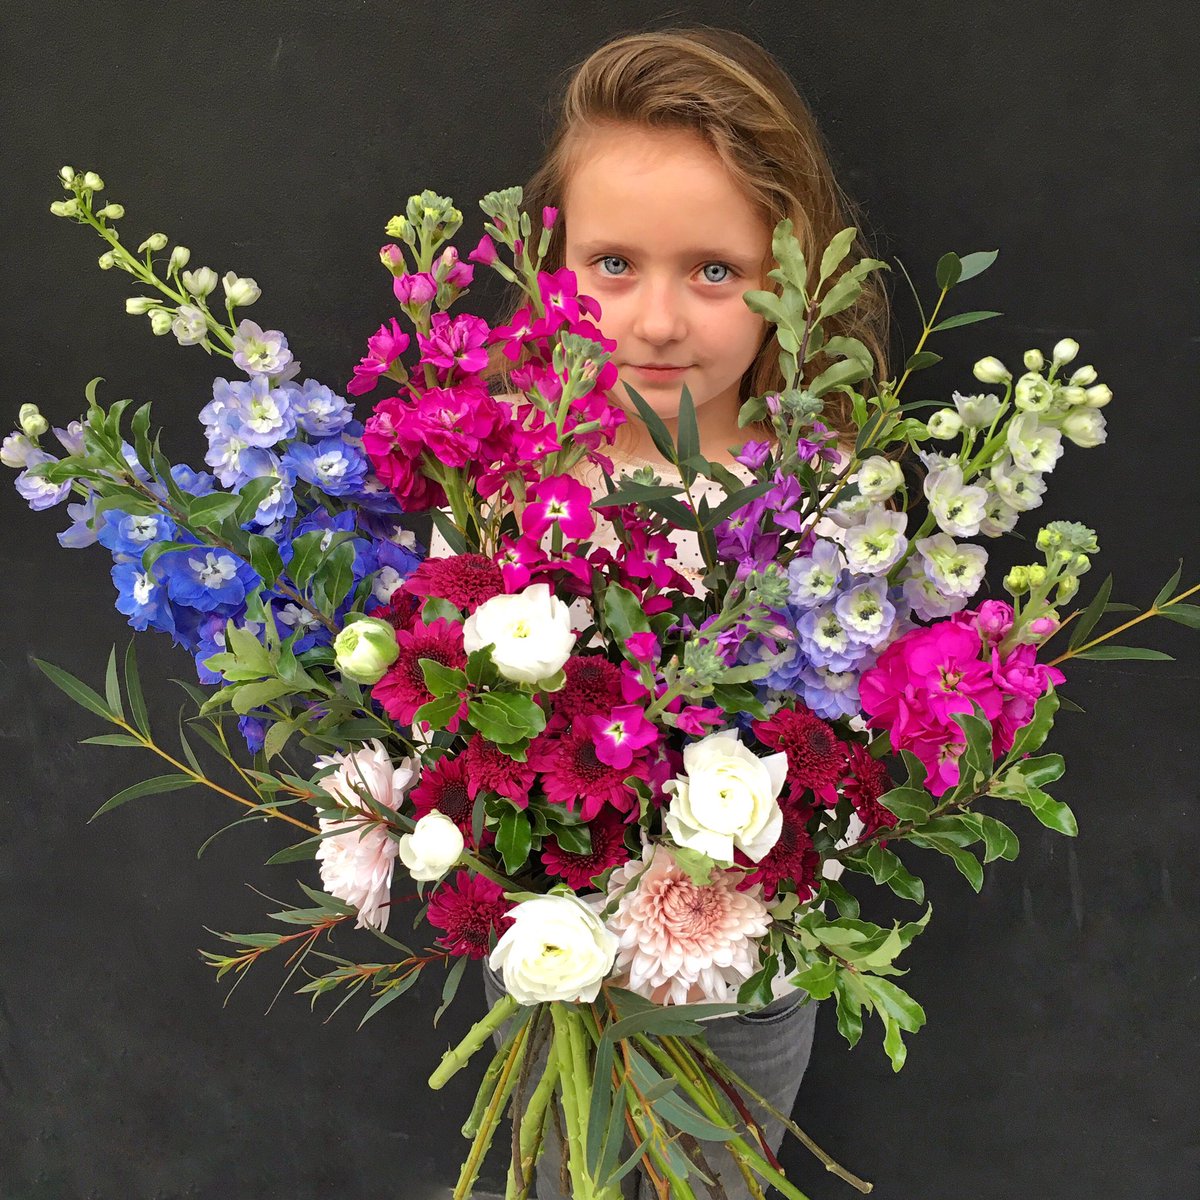 Exuberancia floral para @etheletchelet 💐
Y Sol me ayuda con sus manitos 🙌🏻💓
.
#diseñofloral #arreglosflorales #floraldesign #florist #myflos